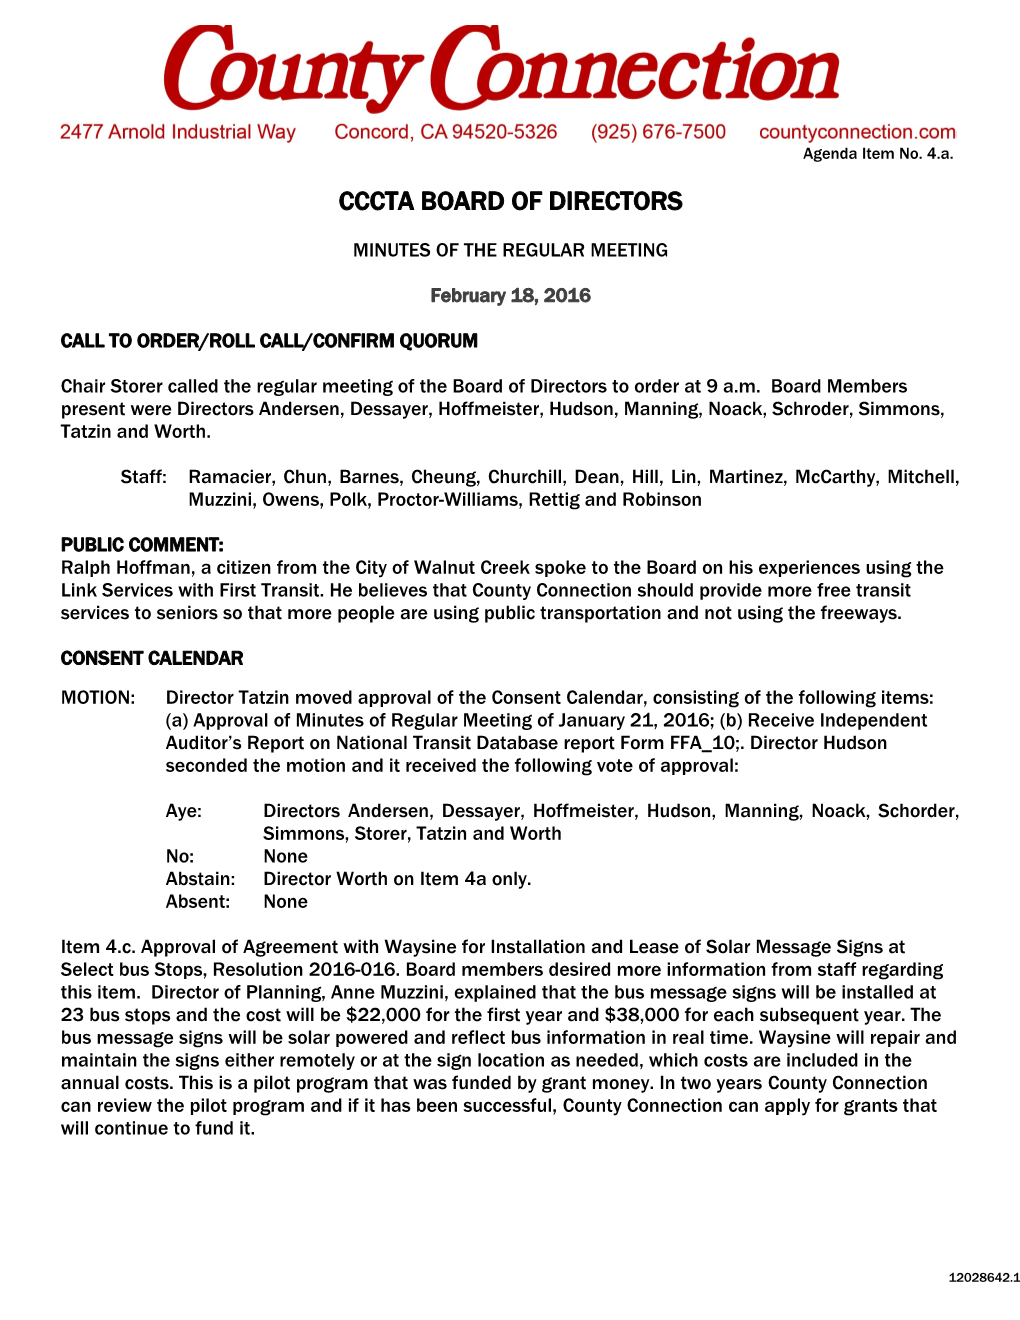 Cccta Board of Directors